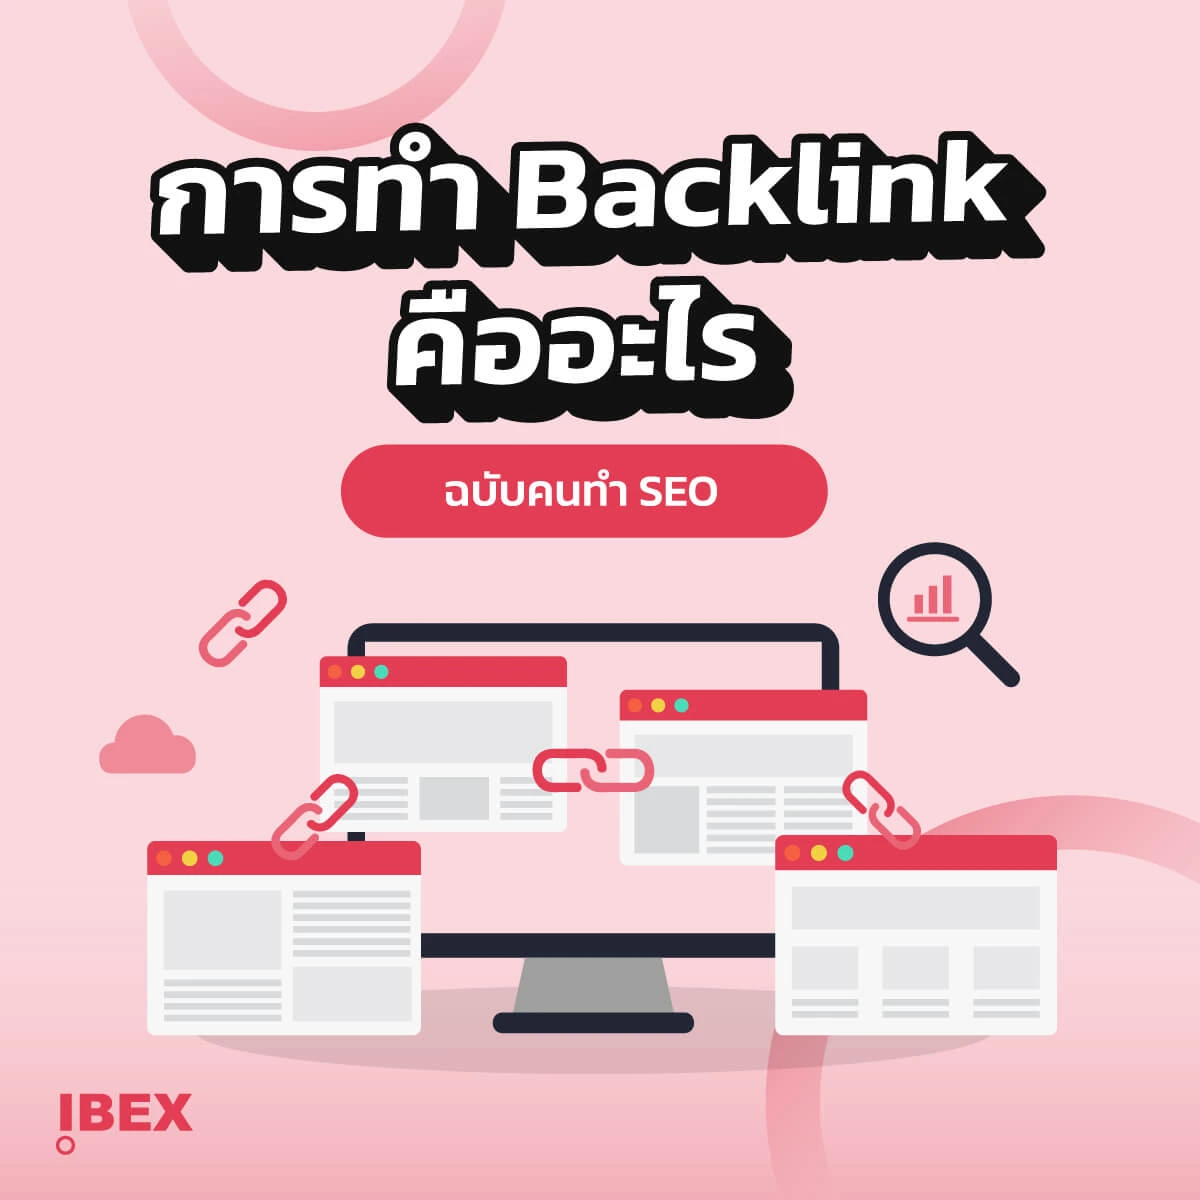 การทำ Backlink คือการช่วยทำให้เว็บไซต์ของคุณมีโอกาสทำให้คนรู้จักเว็บไซต์ของคุณ และมีผลดีต่ออัลกอรึทึมของกูเกิ้ล